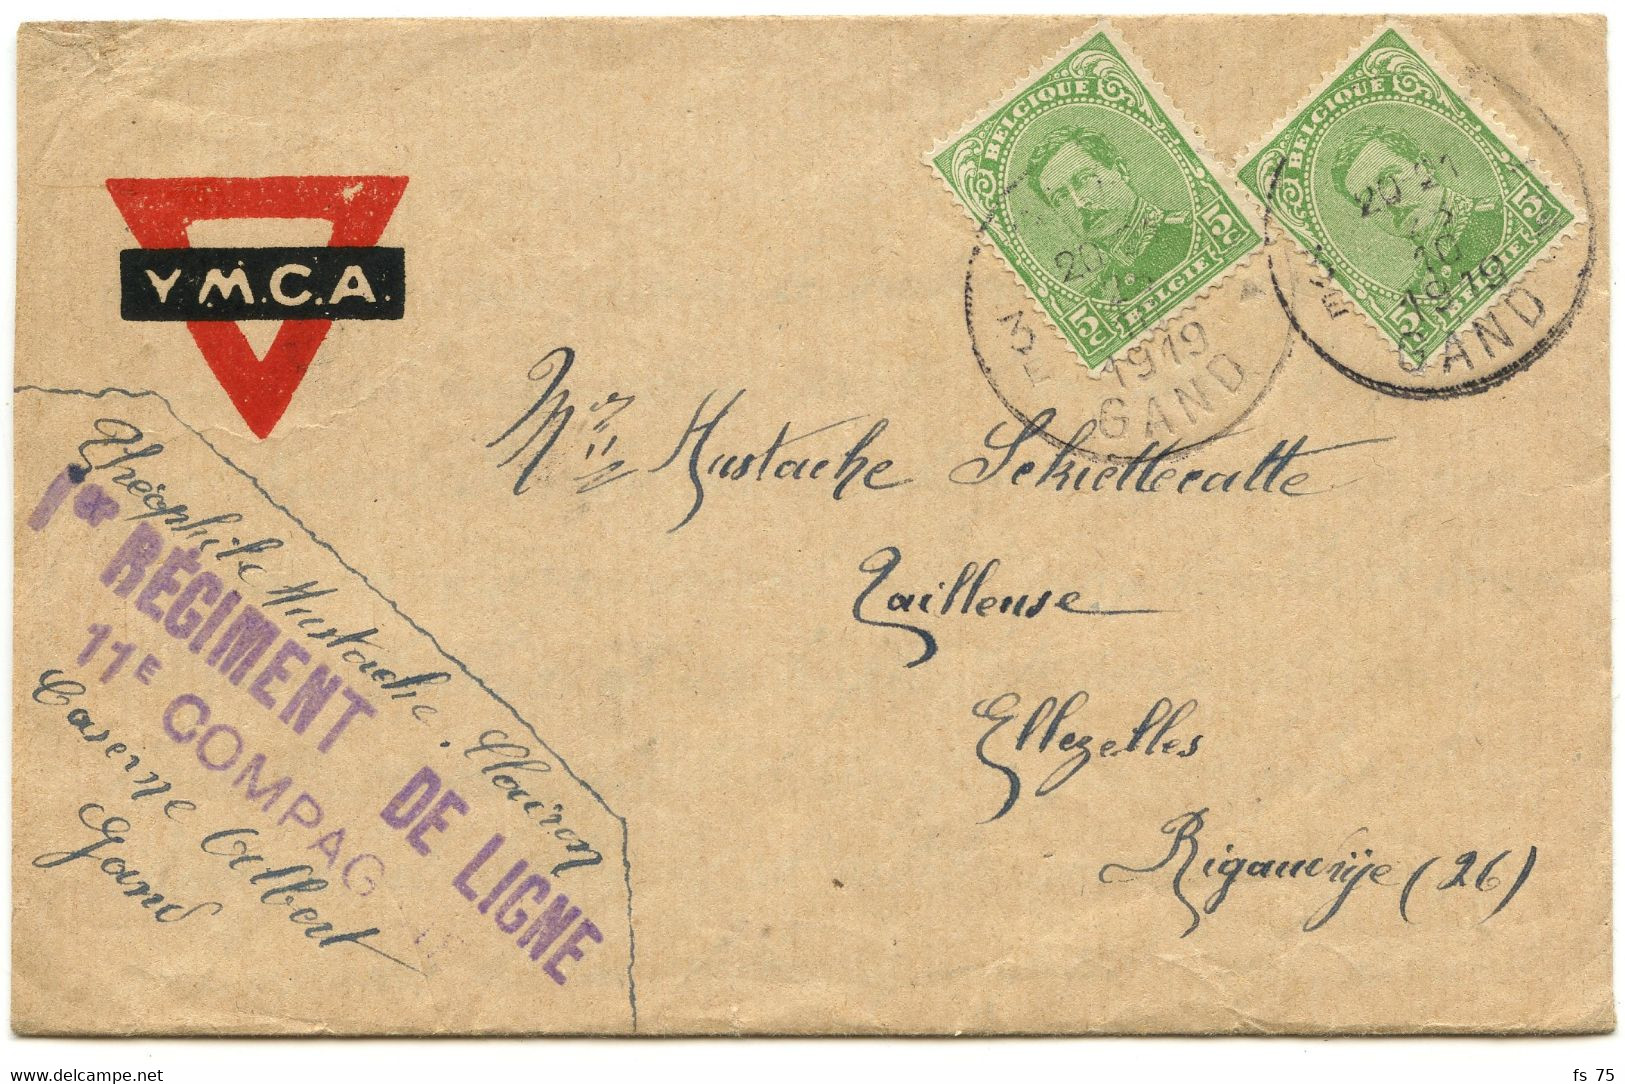 BELGIQUE - LOT DE 4 LETTRES AVEC TEXTE D'UN SOLDAT BELGE A EN-TETE Y.M.C.A., 1919 - Armée Belge